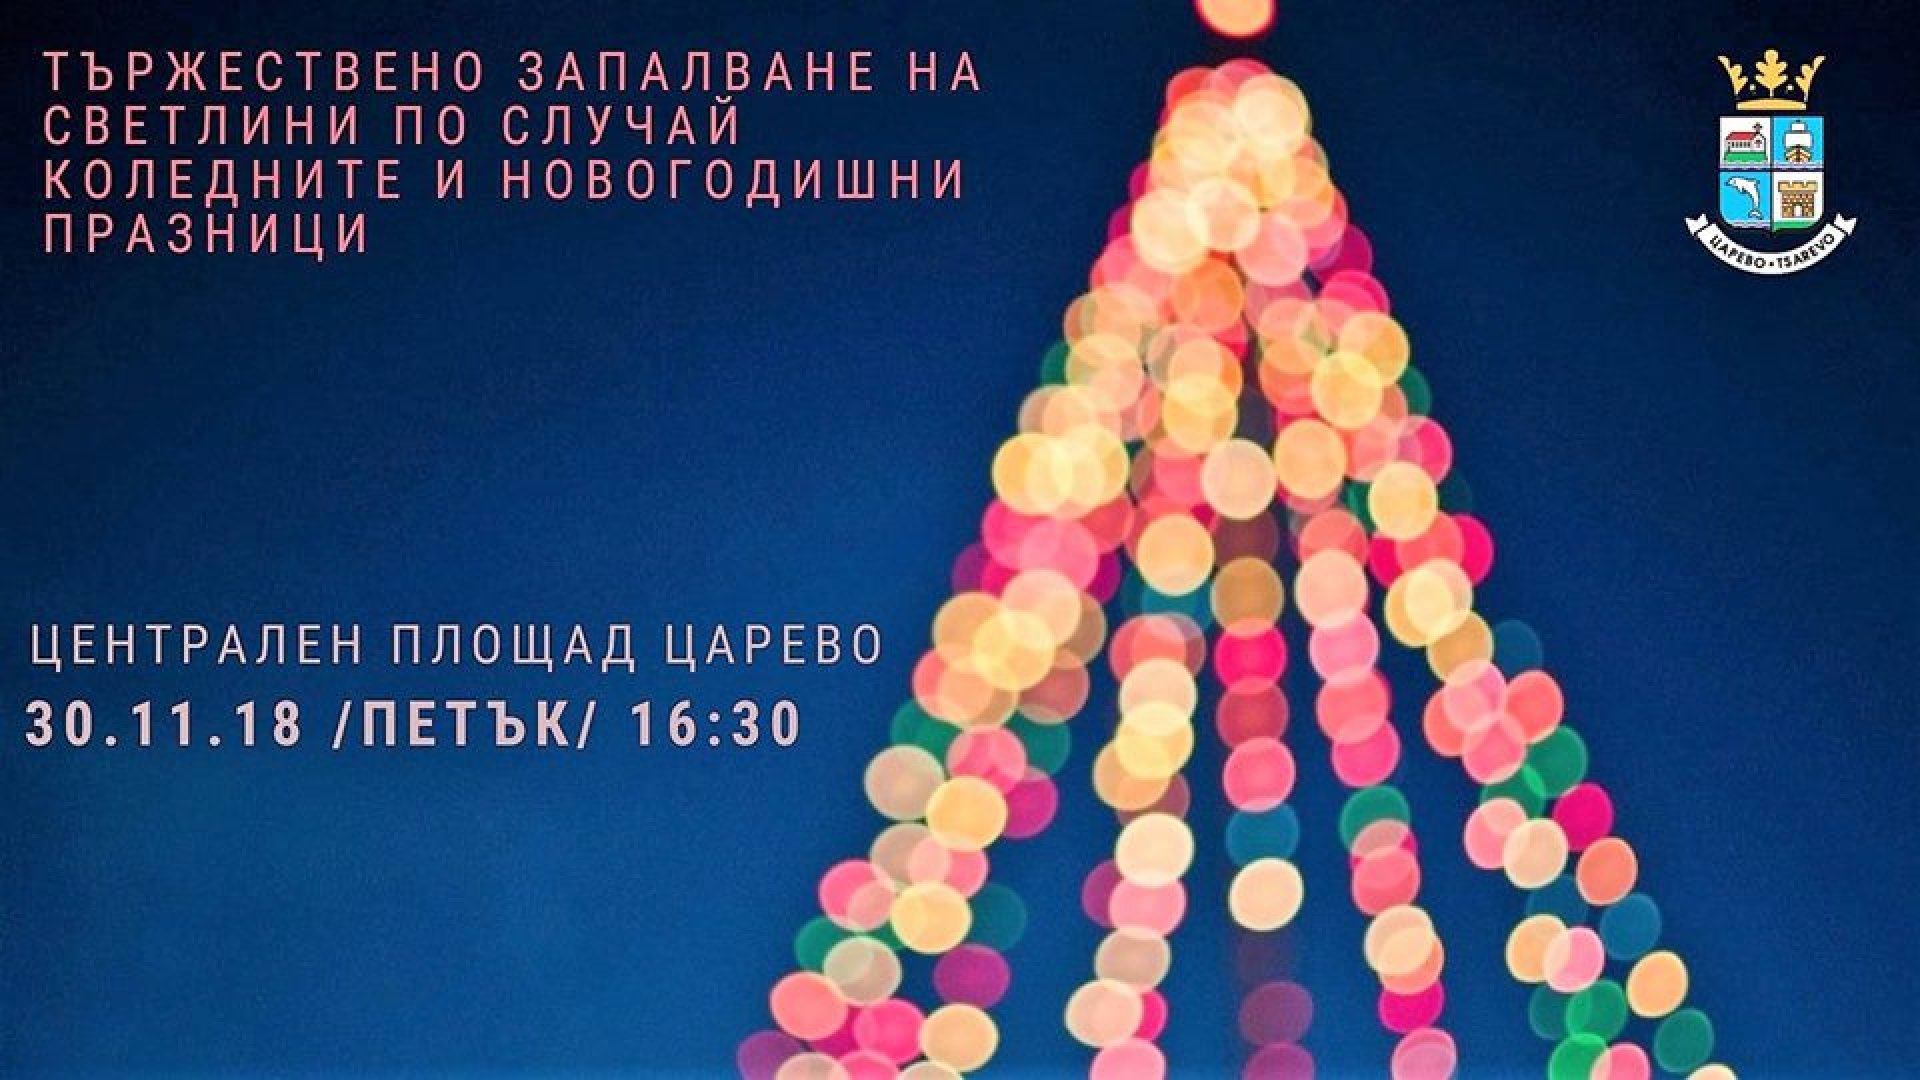 Празникът, организиран от Община Царево, е подарък за жителите на града